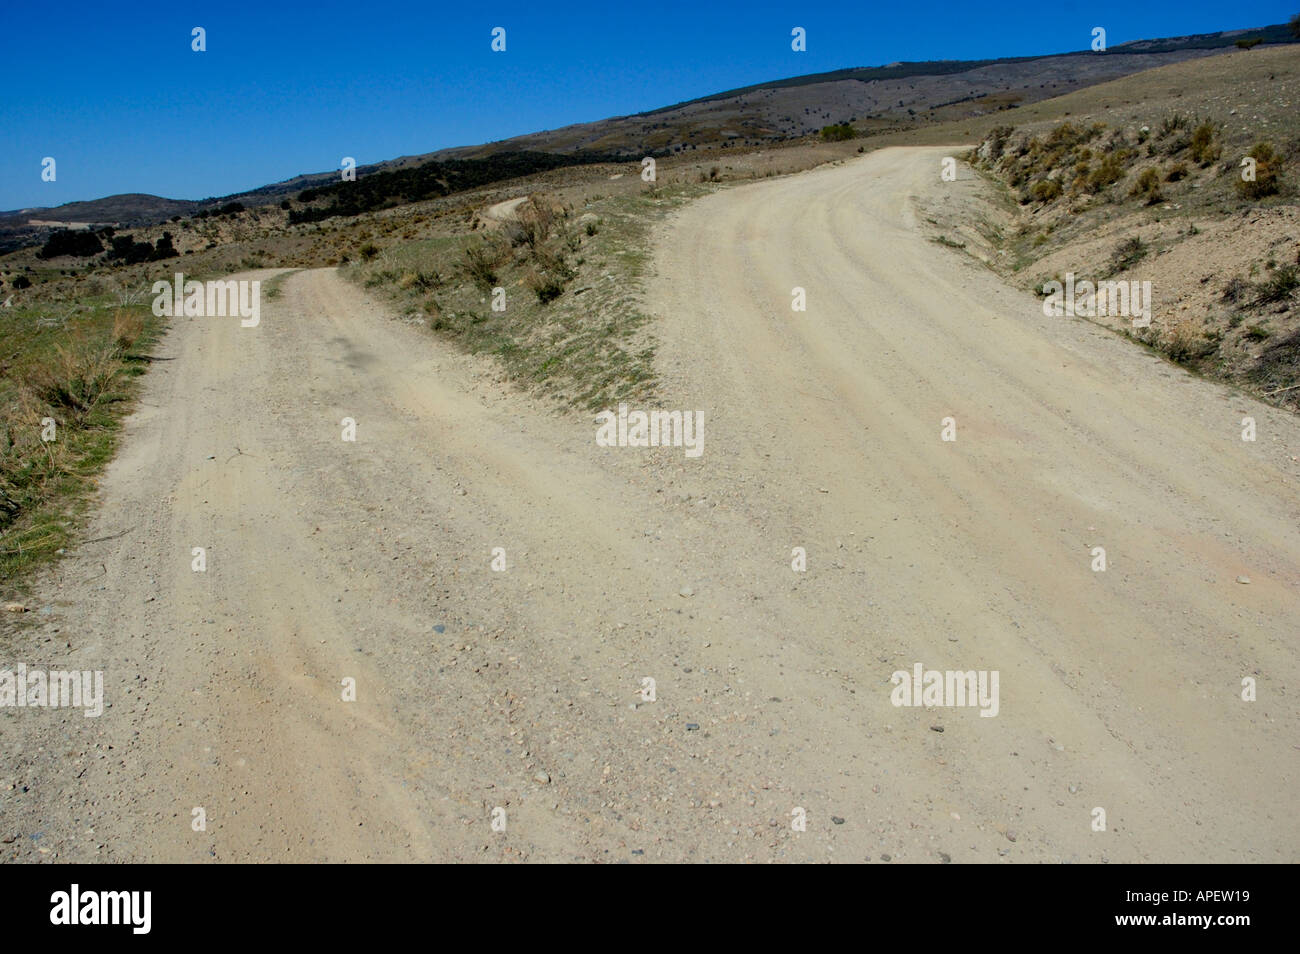 Strada sterrata si biforca in due nella Alpujarras montagne, Andalusia, Spagna. Foto Stock